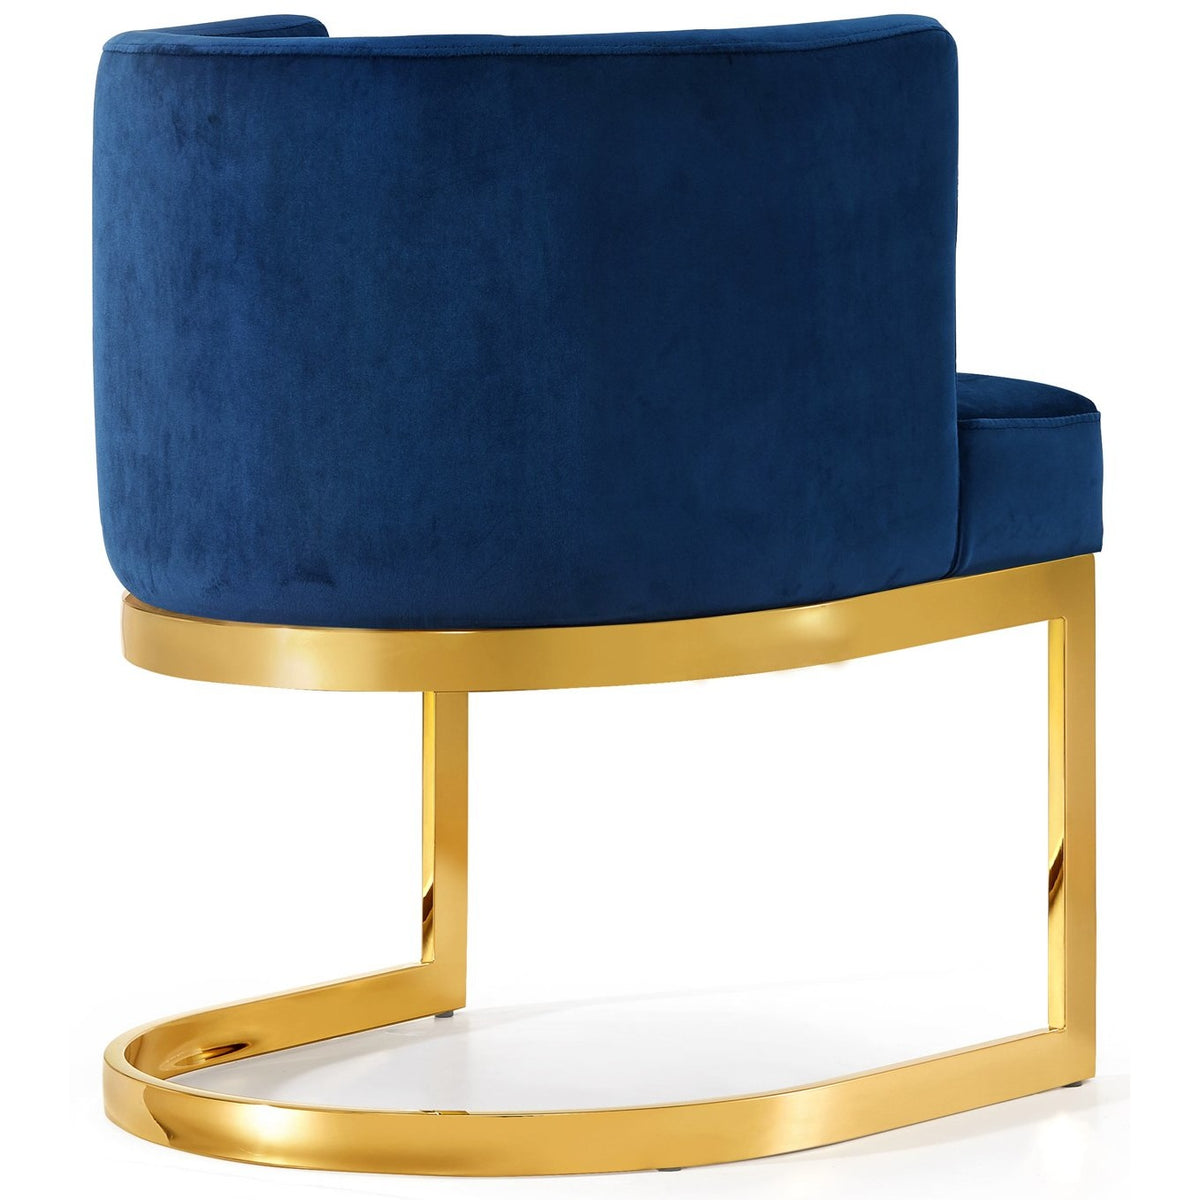 Meridian Furniture Gianna Navy Velvet Dining Chair-Minimal & Modern